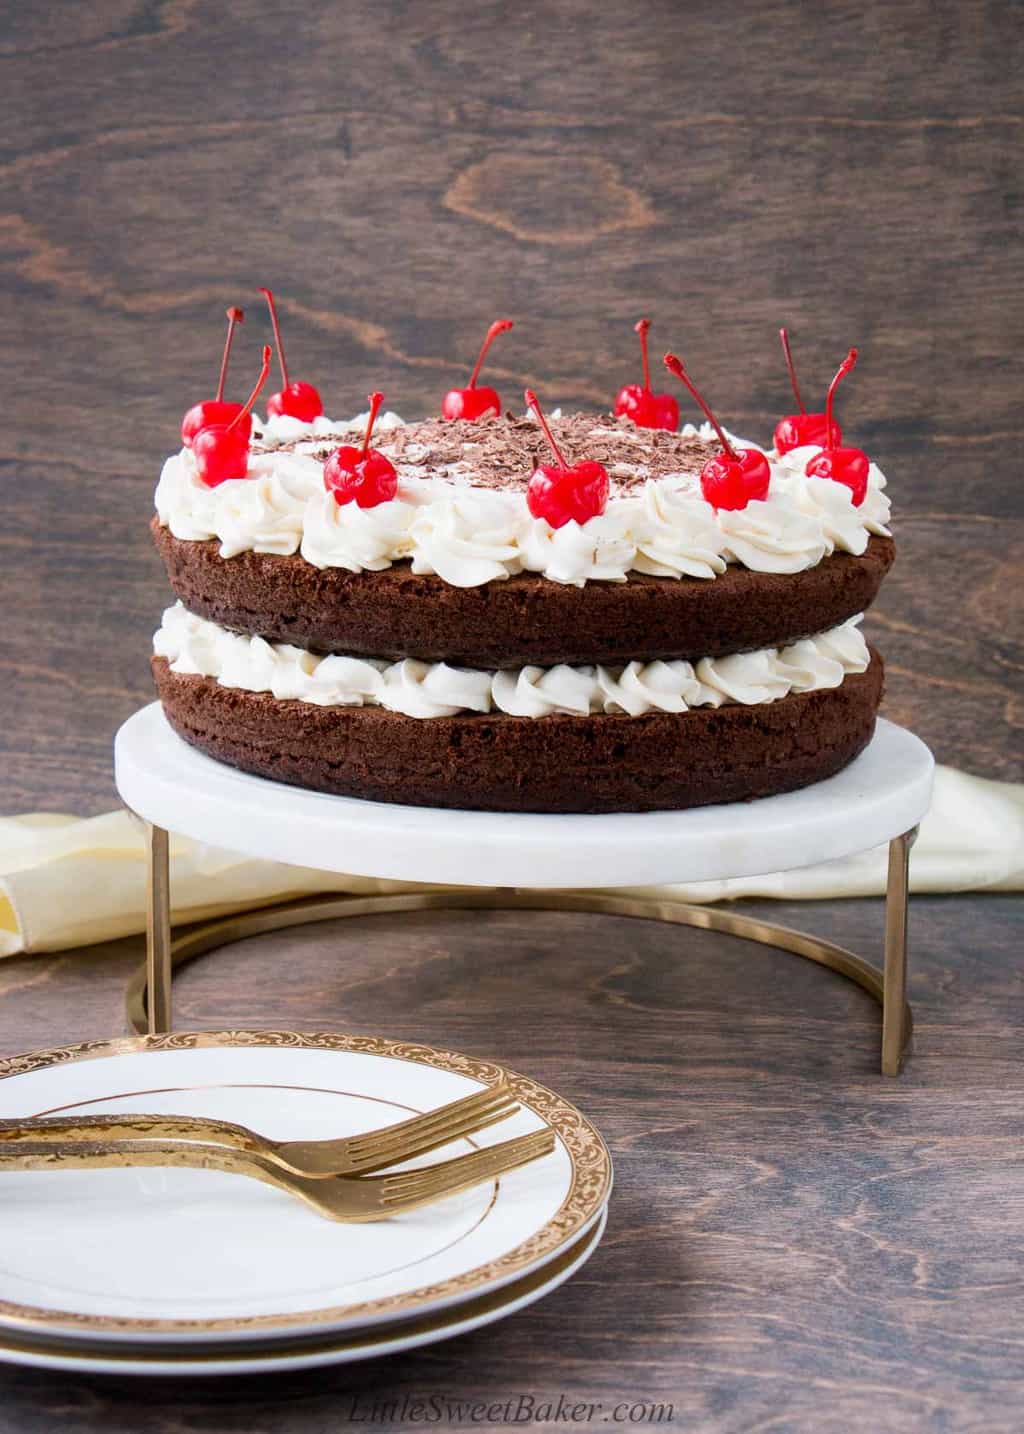 Best Black Forest Cake In Ahmedabad | Order Online